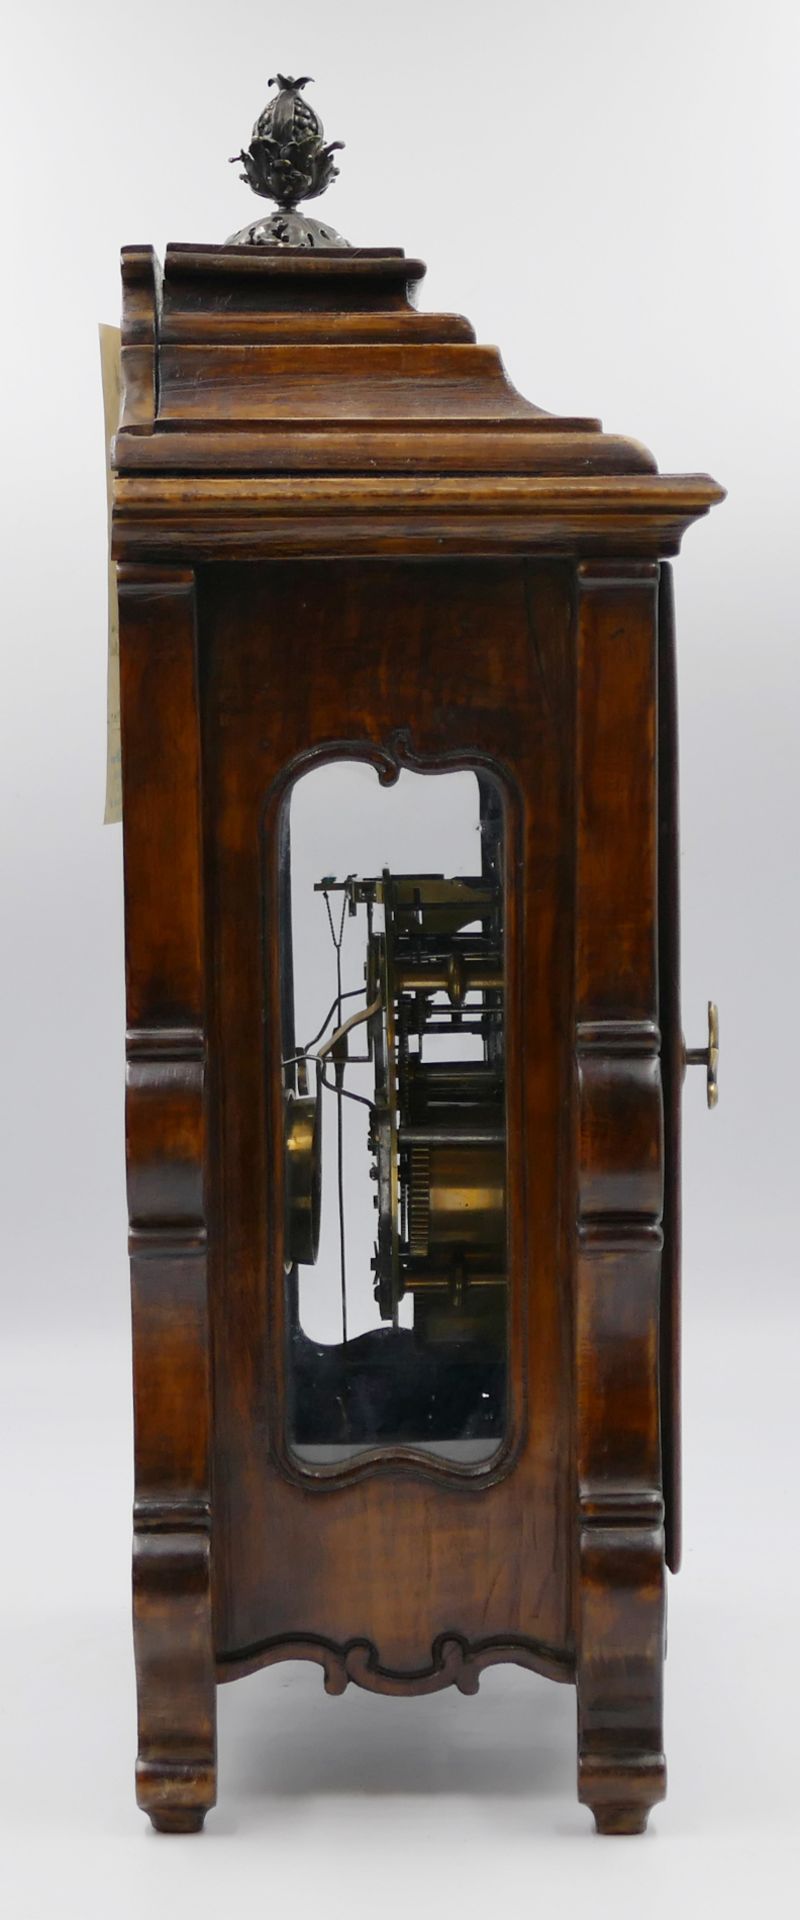 1 Tischuhr/Stockuhr lt. beiliegender Schätzung fränkisch um 1750, Holzgehäuse beschnitzt, emailliert - Bild 3 aus 5